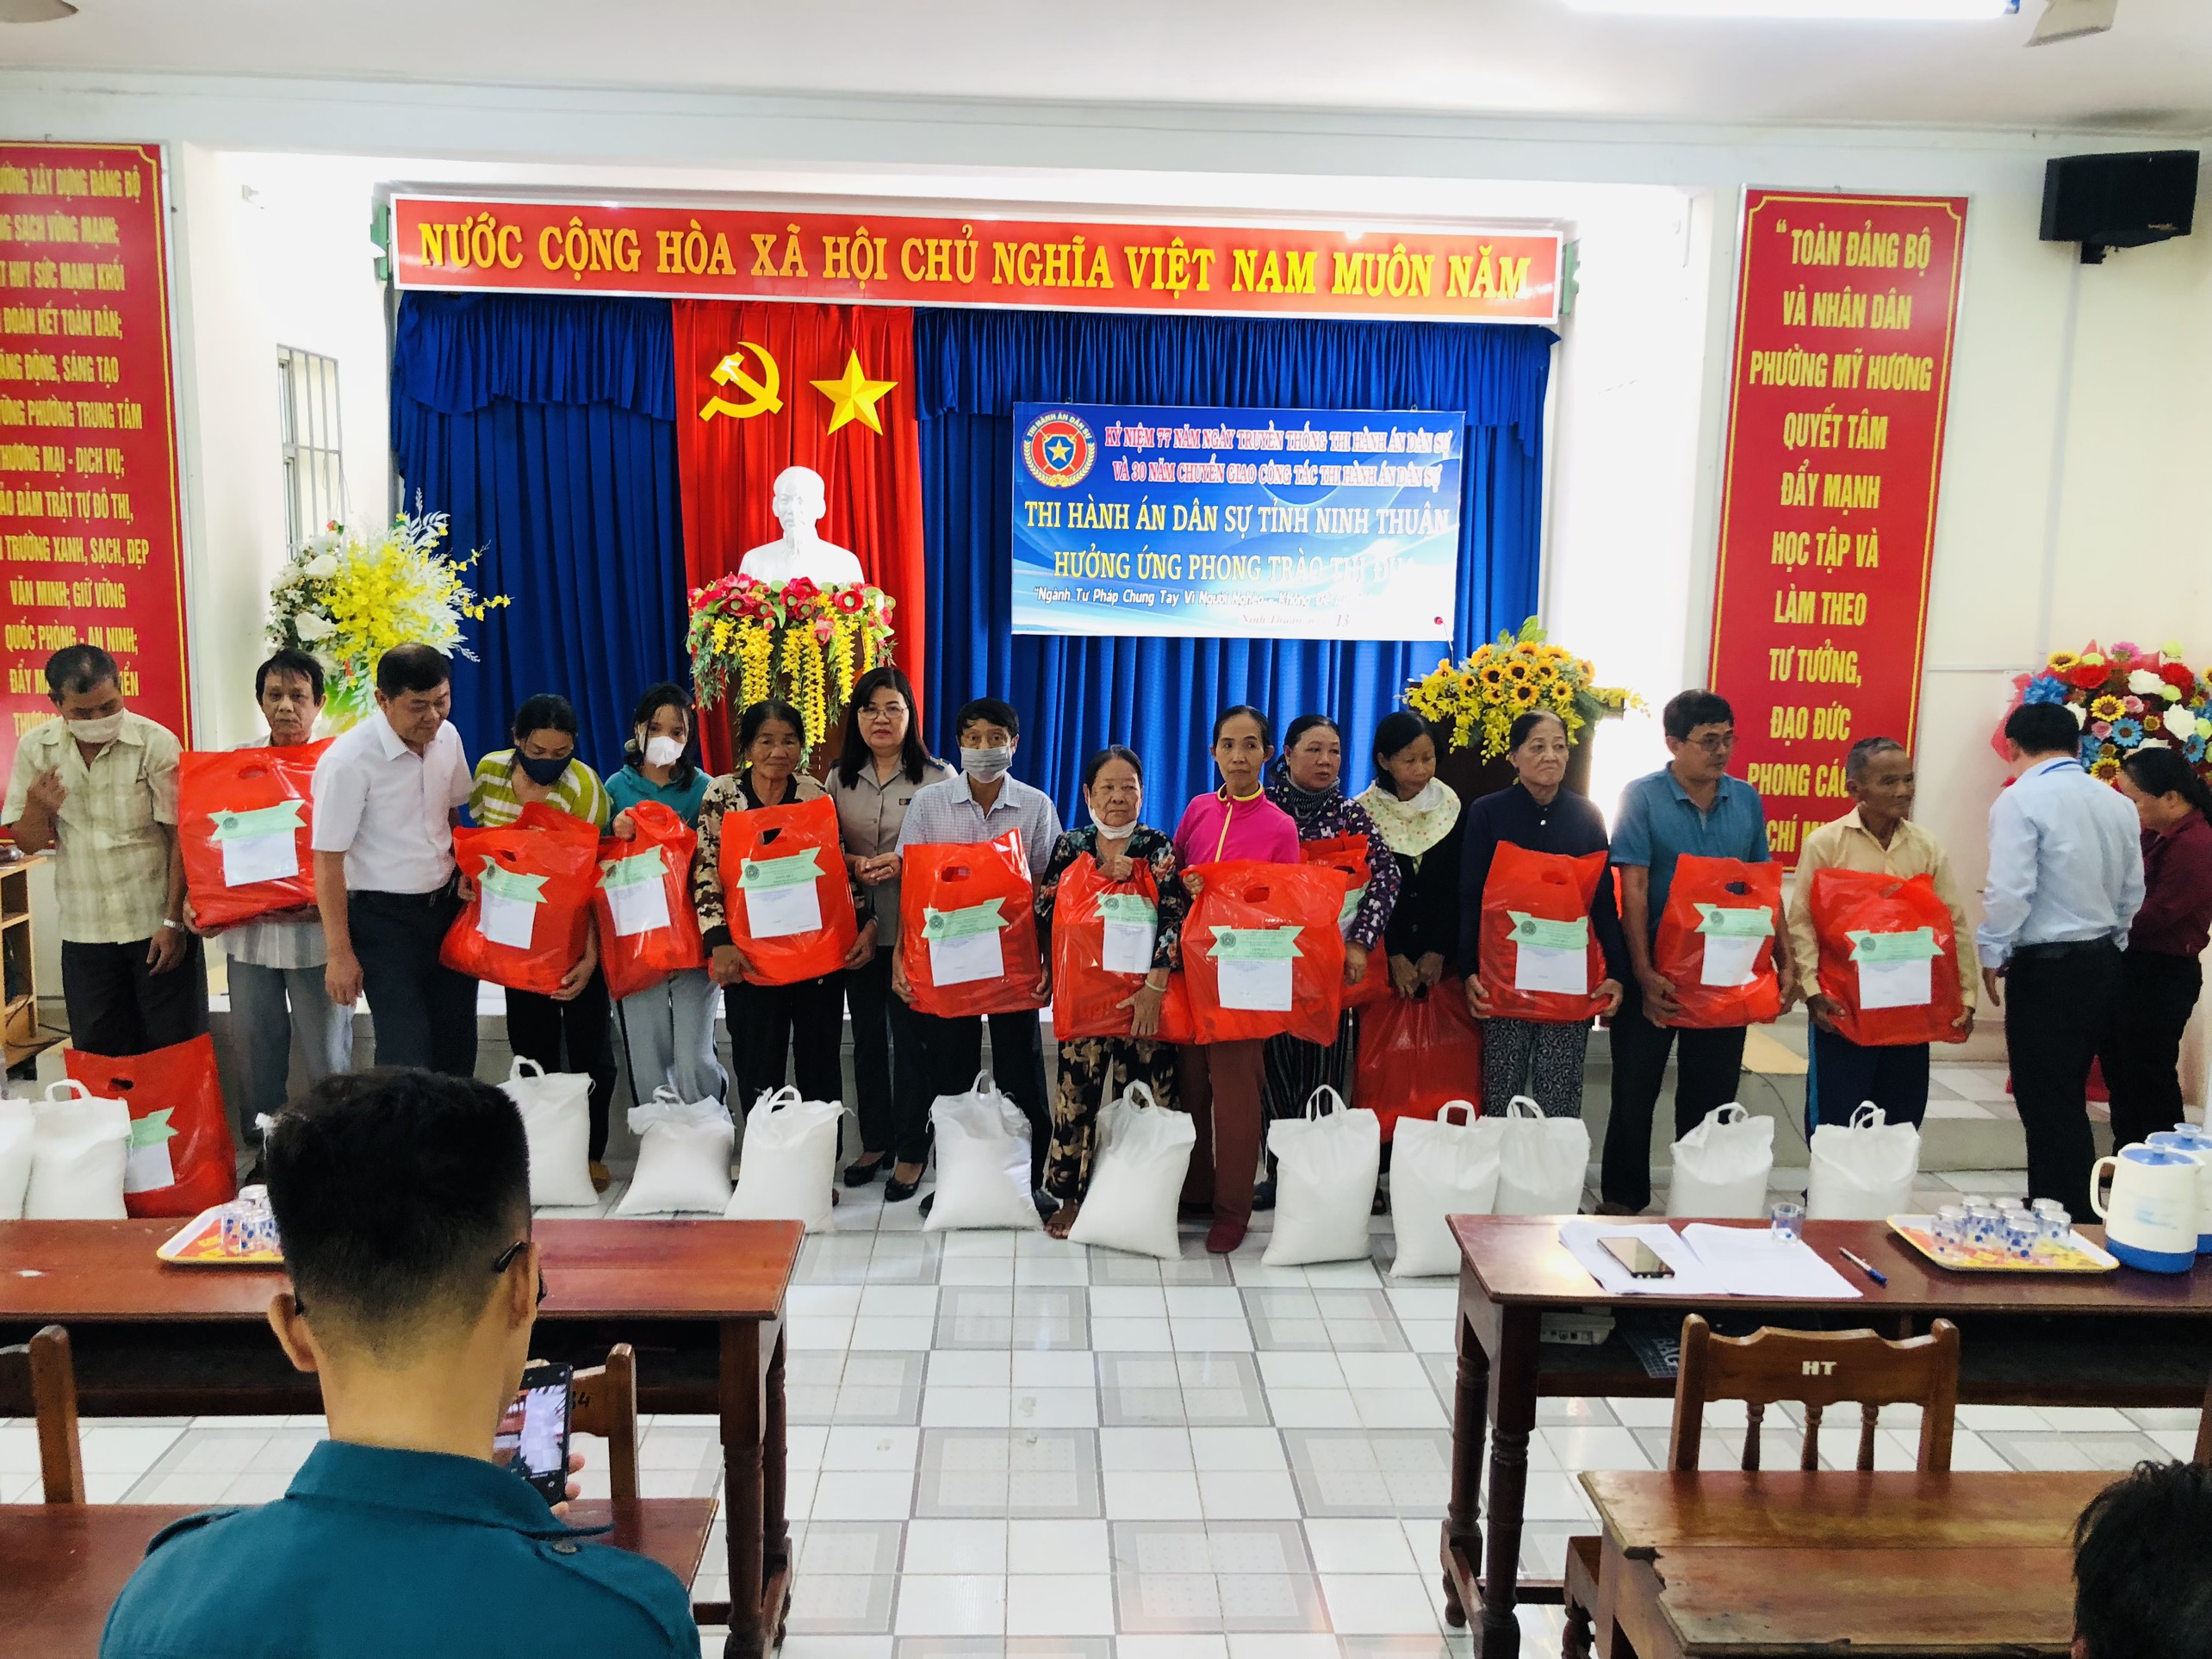 Thi hành án dân sự tỉnh Ninh Thuận hưởng ứng phong trào thi đua 